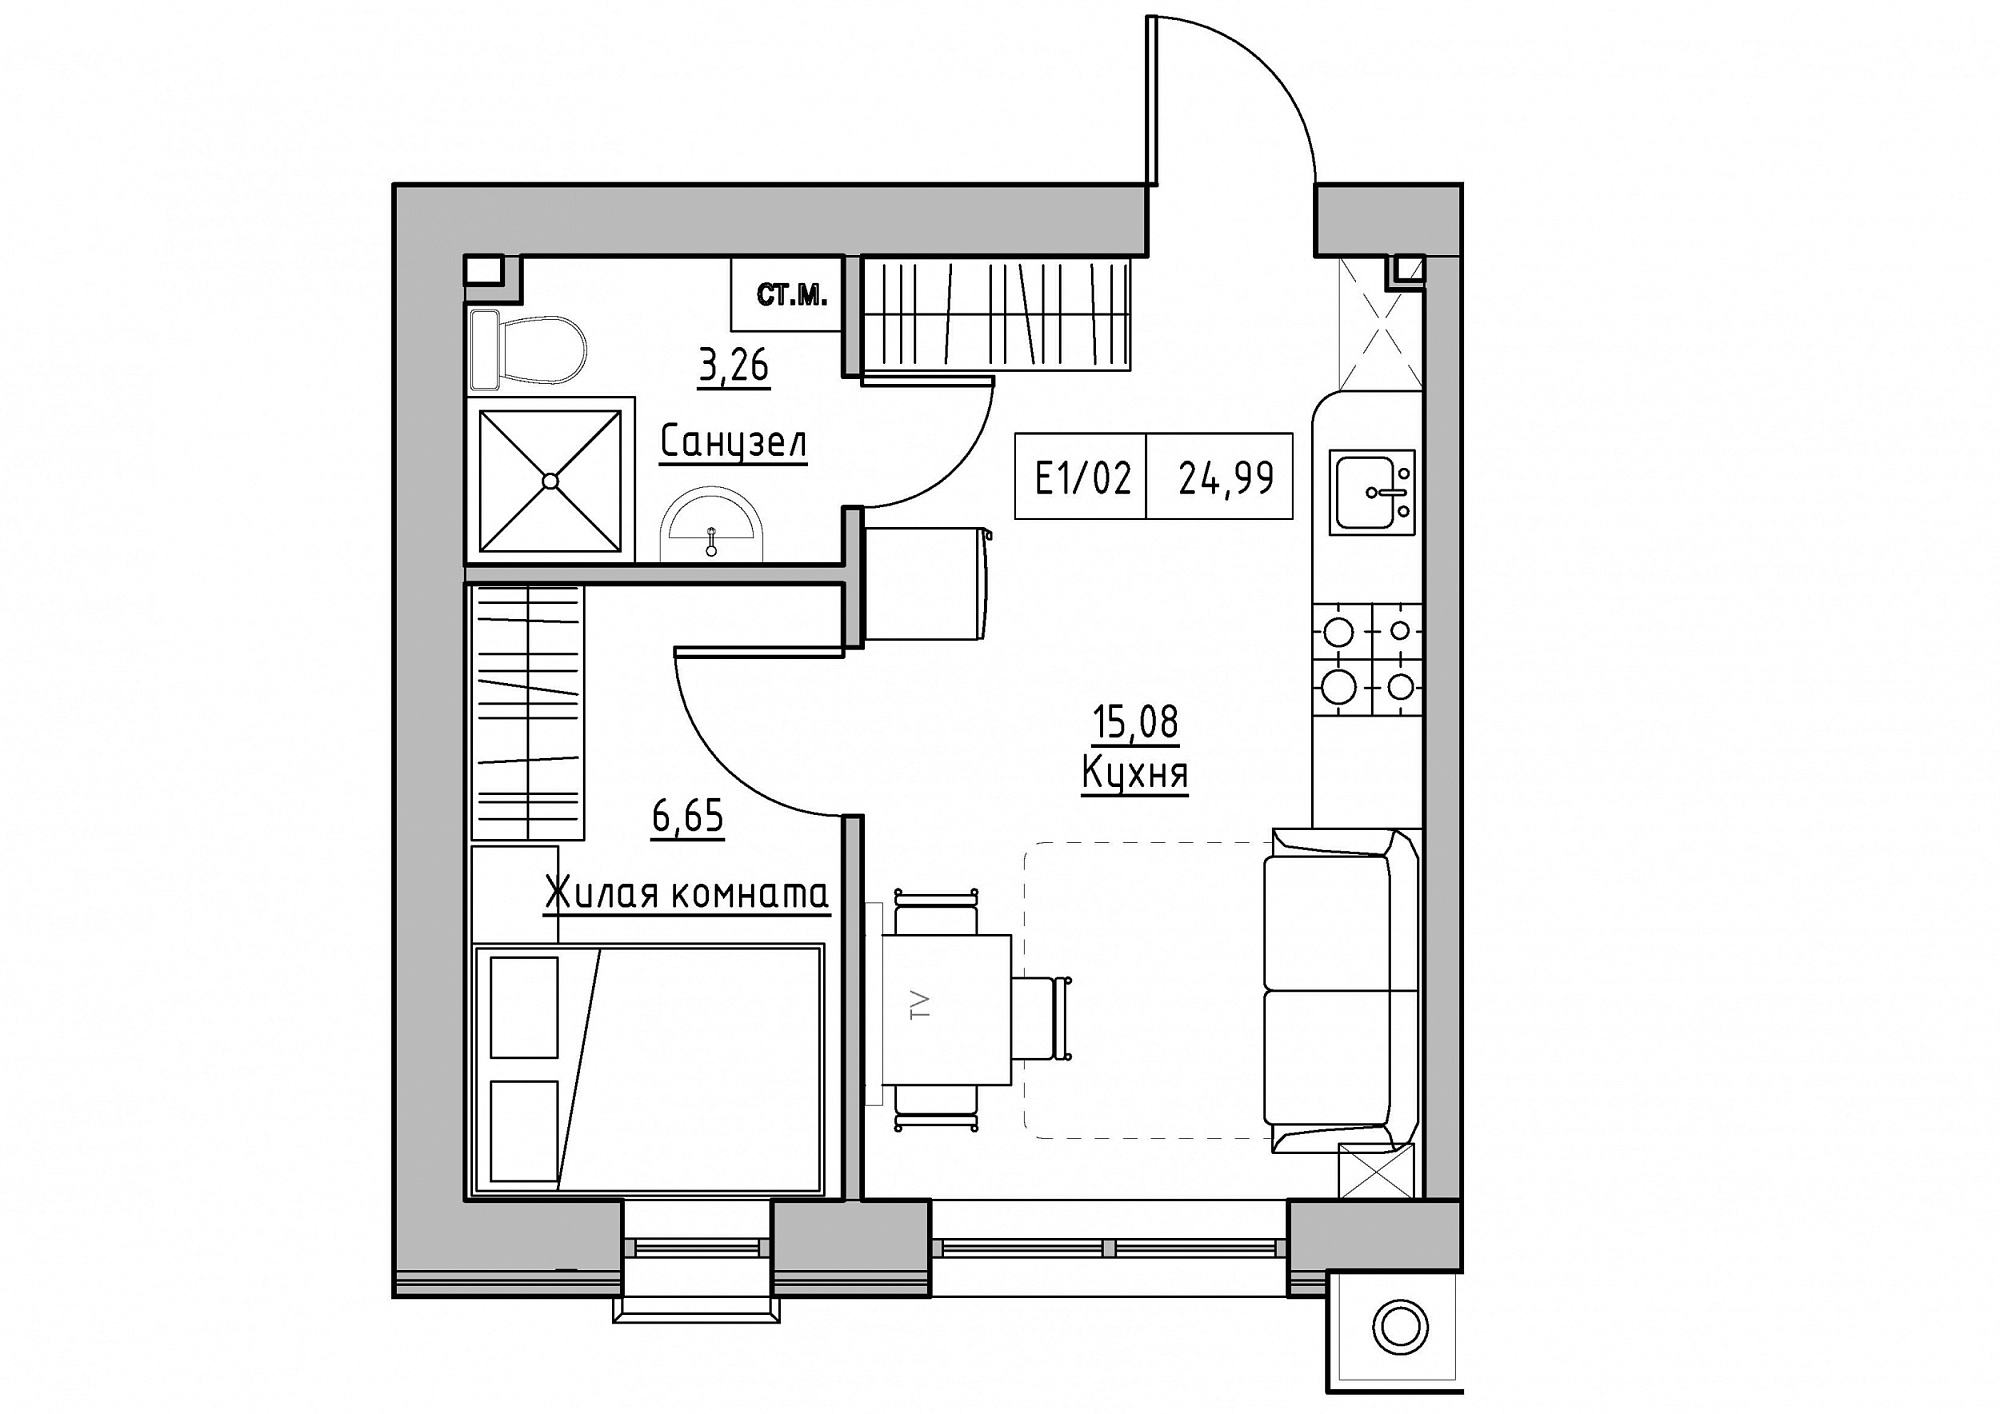 Планування 1-к квартира площею 24.99м2, KS-011-03/0012.